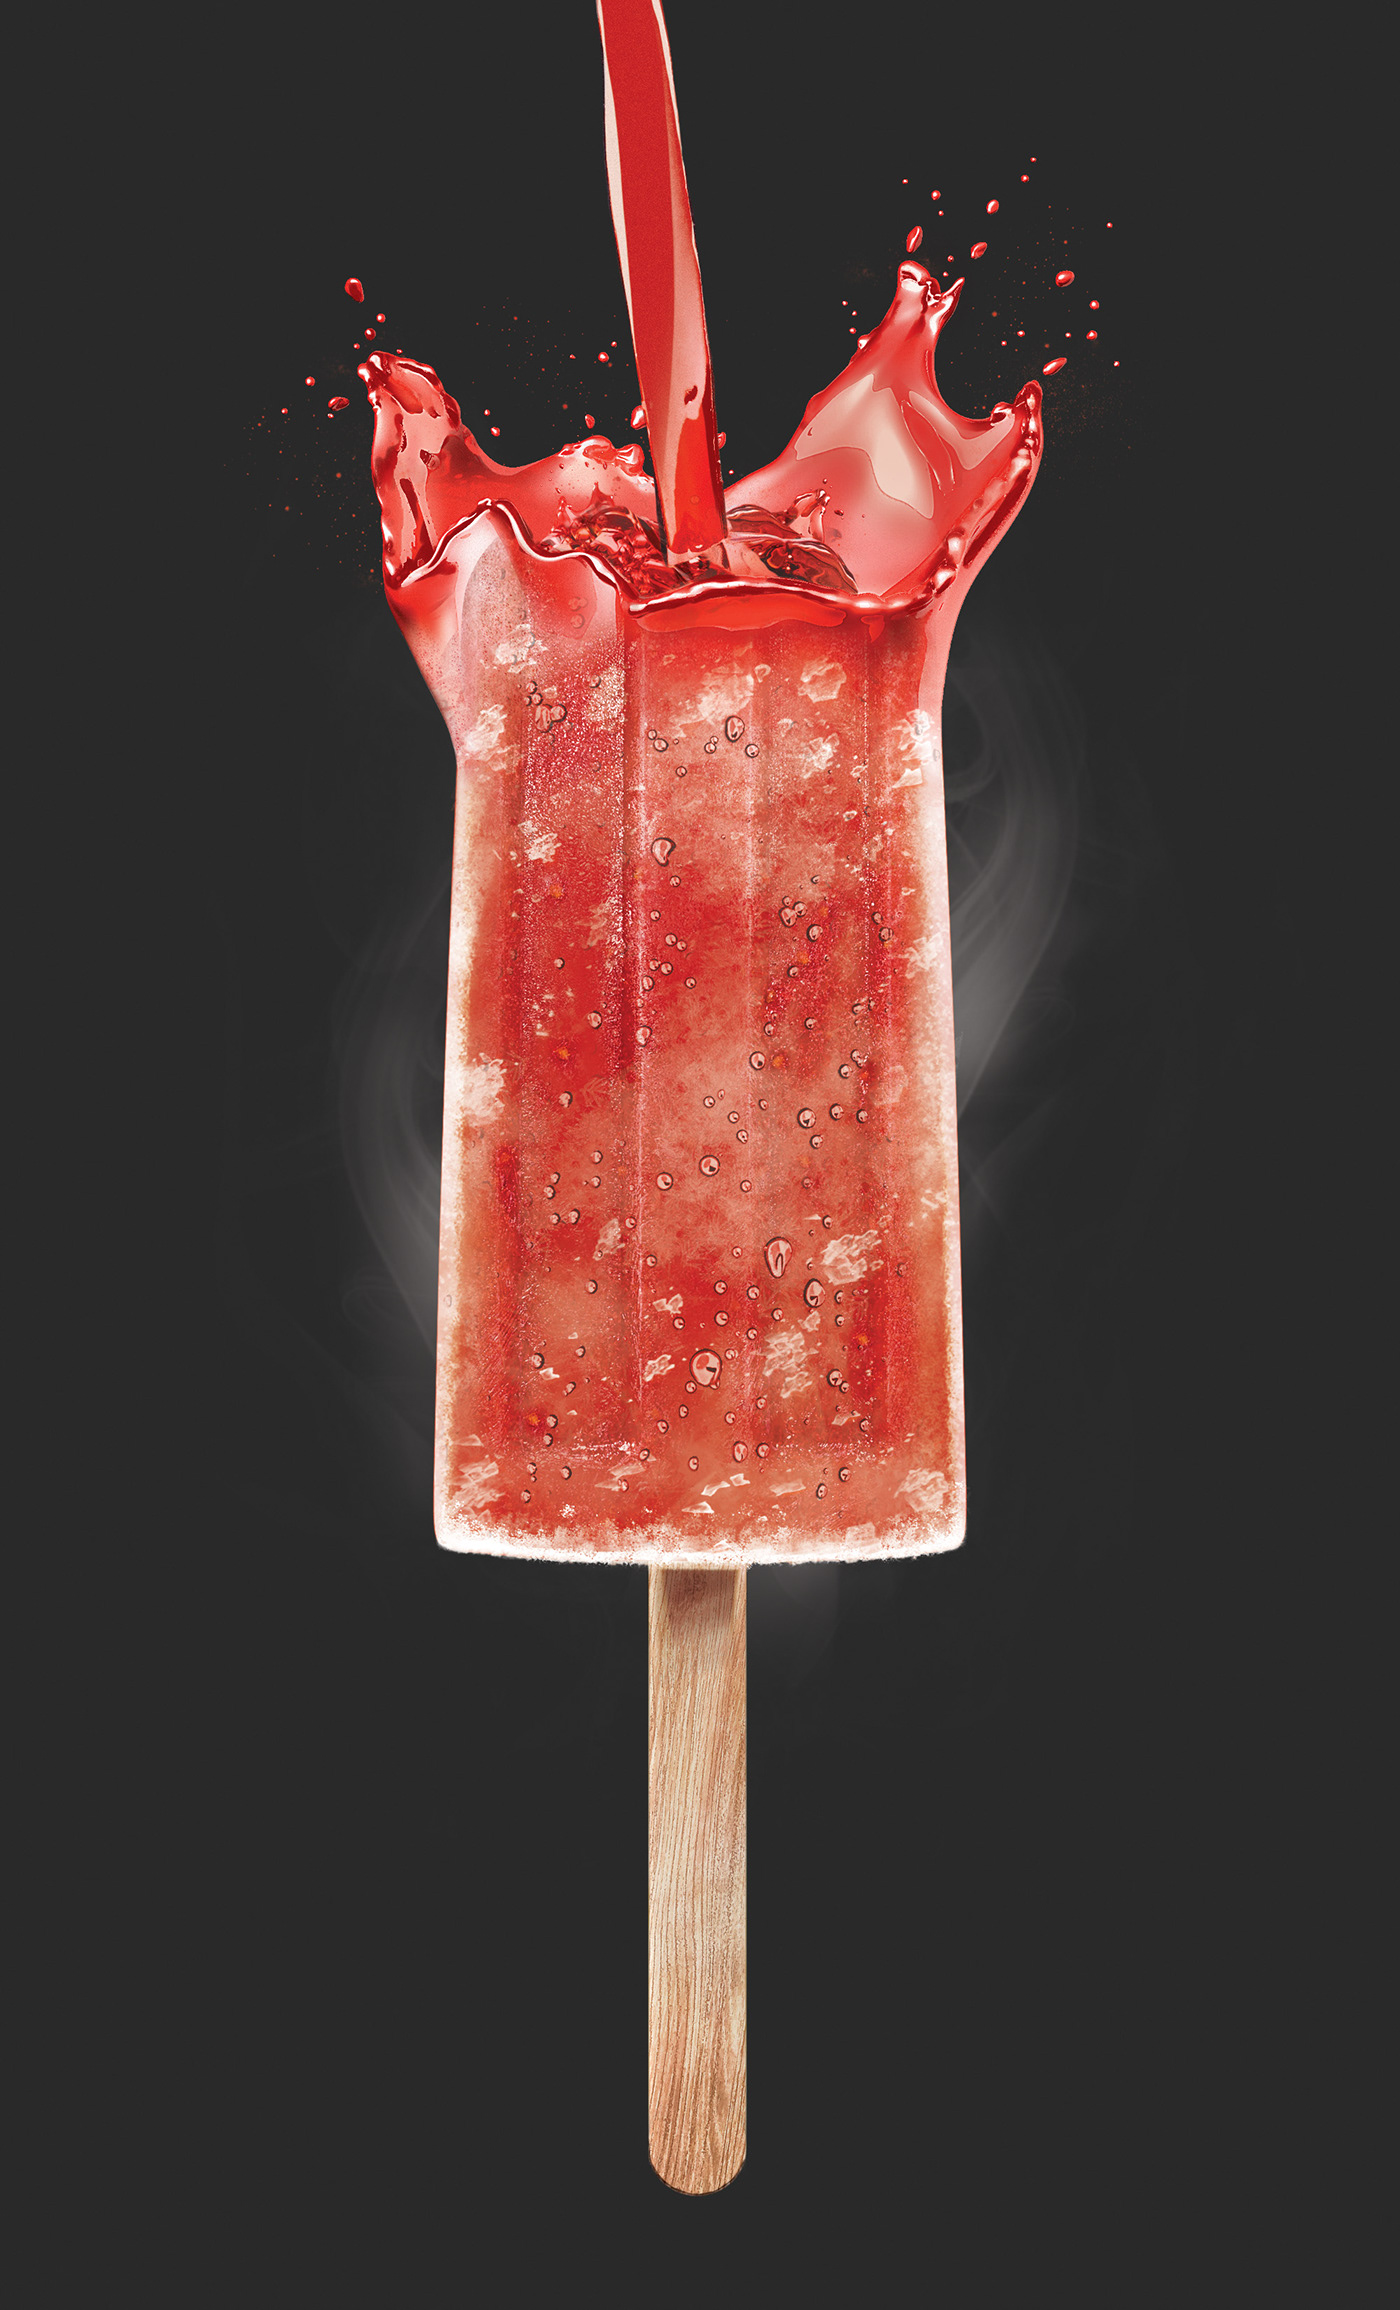 popsicle ice cream ice Lolly lollipop